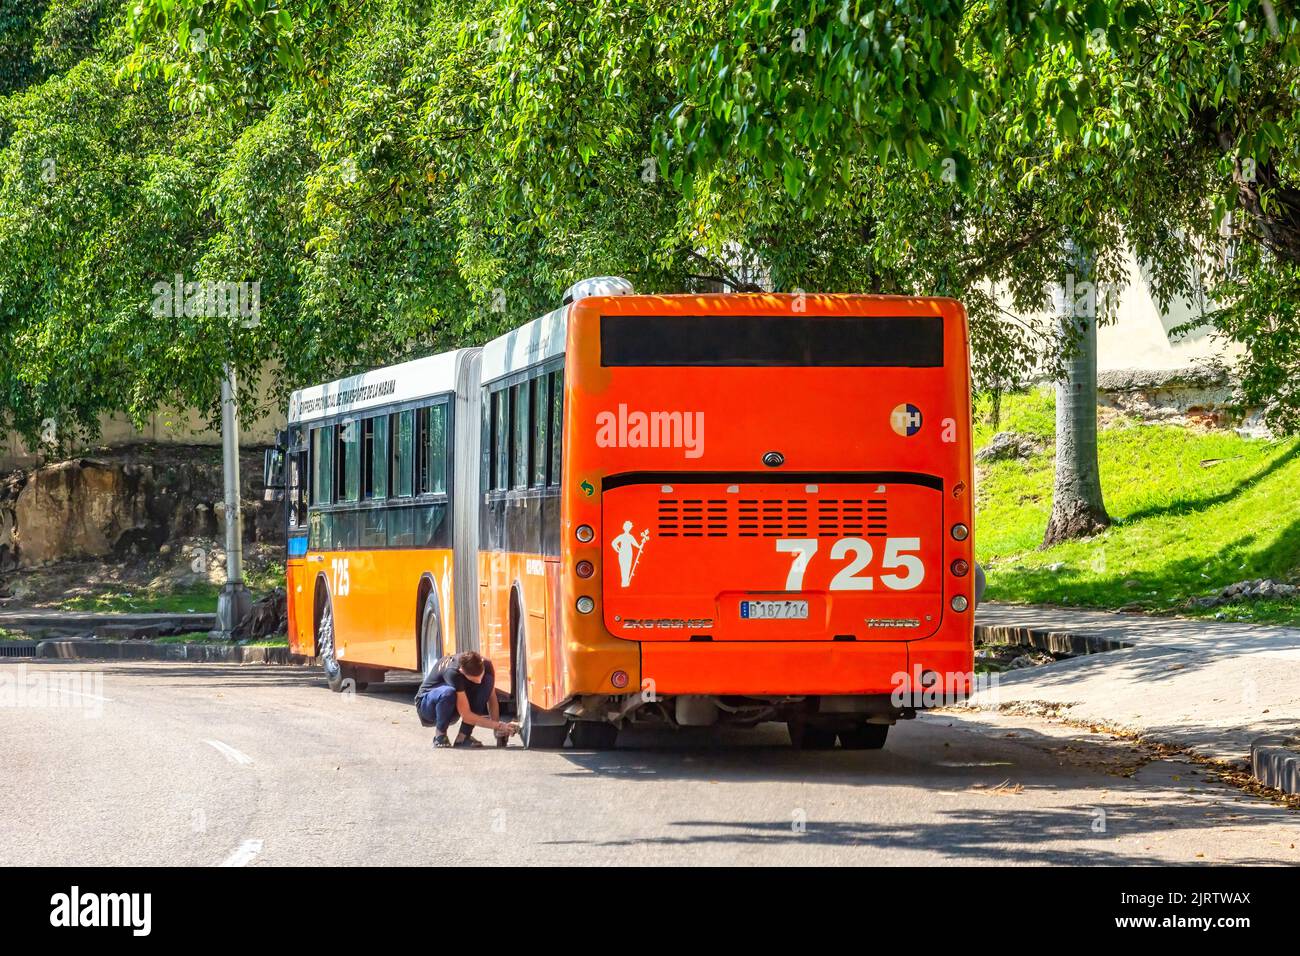 Il conducente di un autobus pubblico controlla uno pneumatico posteriore del veicolo. Il mezzo di trasporto è parcheggiato in strada cittadina dove gli alberi proiettano un po' di ombra. Foto Stock